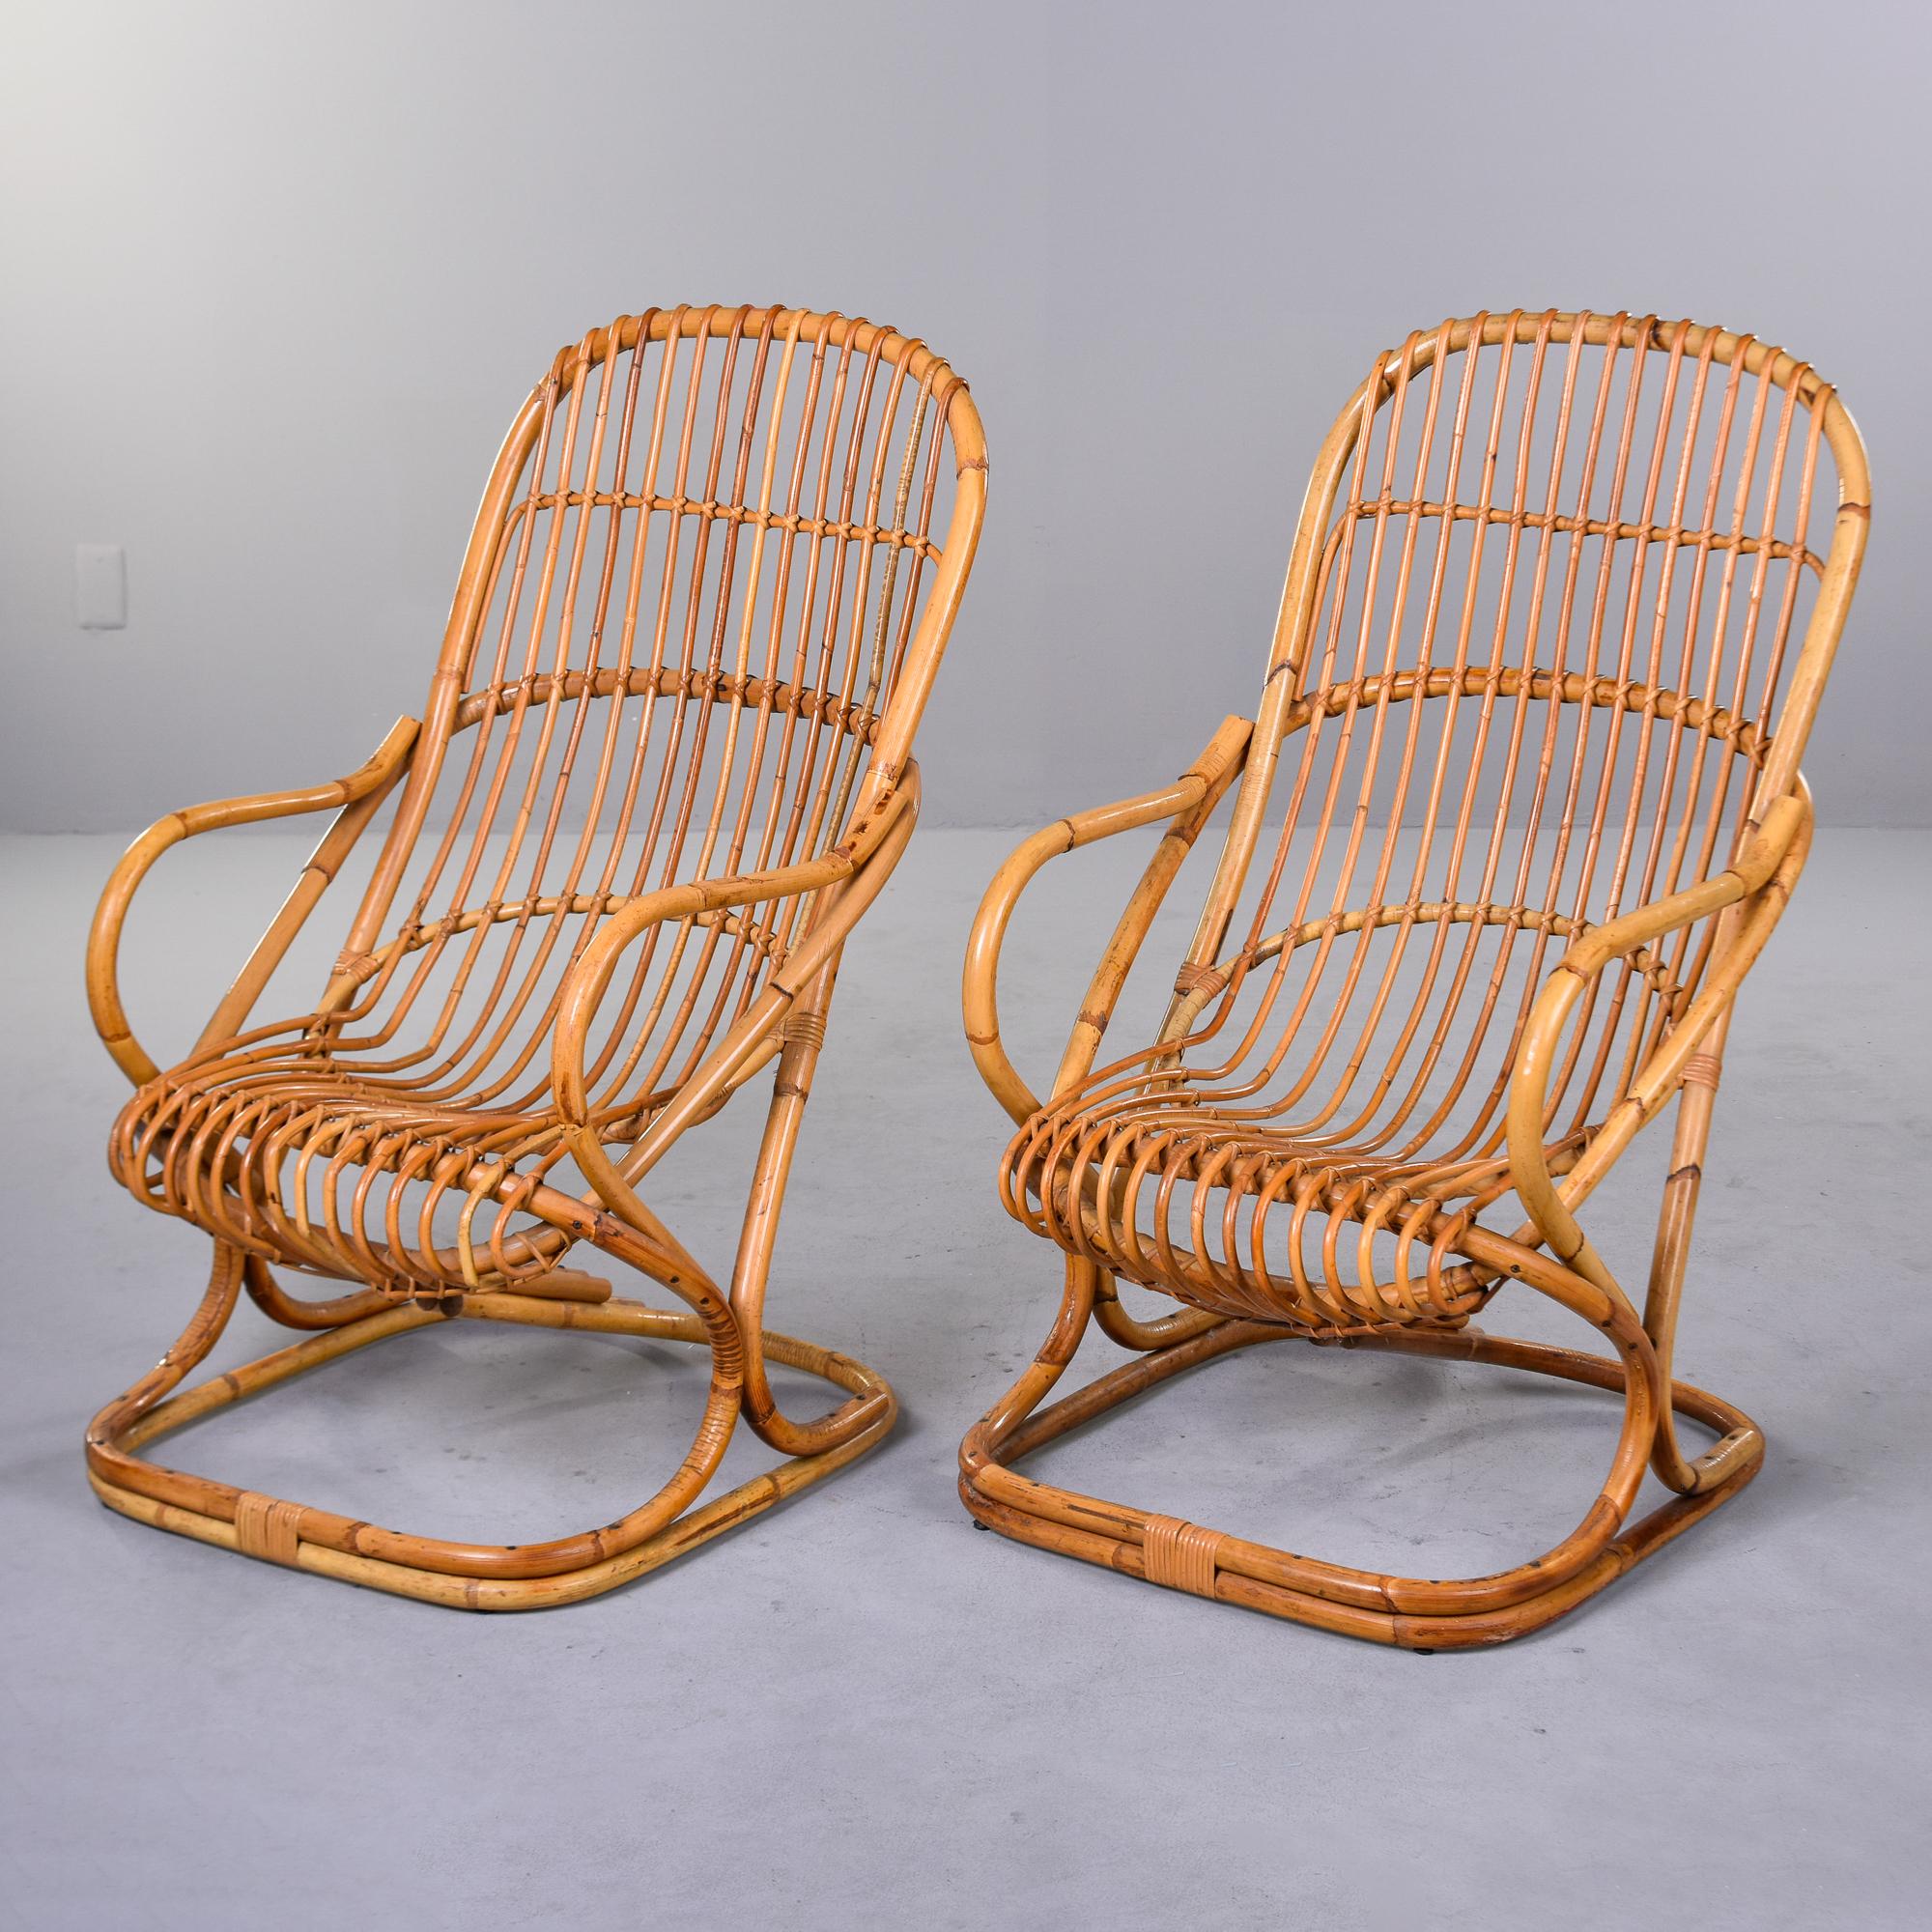 Dieses in Italien gefundene Paar Rattansessel wurde 1959 von Tito Agnoli entworfen. Die rechteckigen Stühle mit schalenförmigen Sitzen und geschwungenen Armlehnen funktionieren mit oder ohne Kissen. Bei diesem Paar wurden keine Kissen gefunden. Sehr